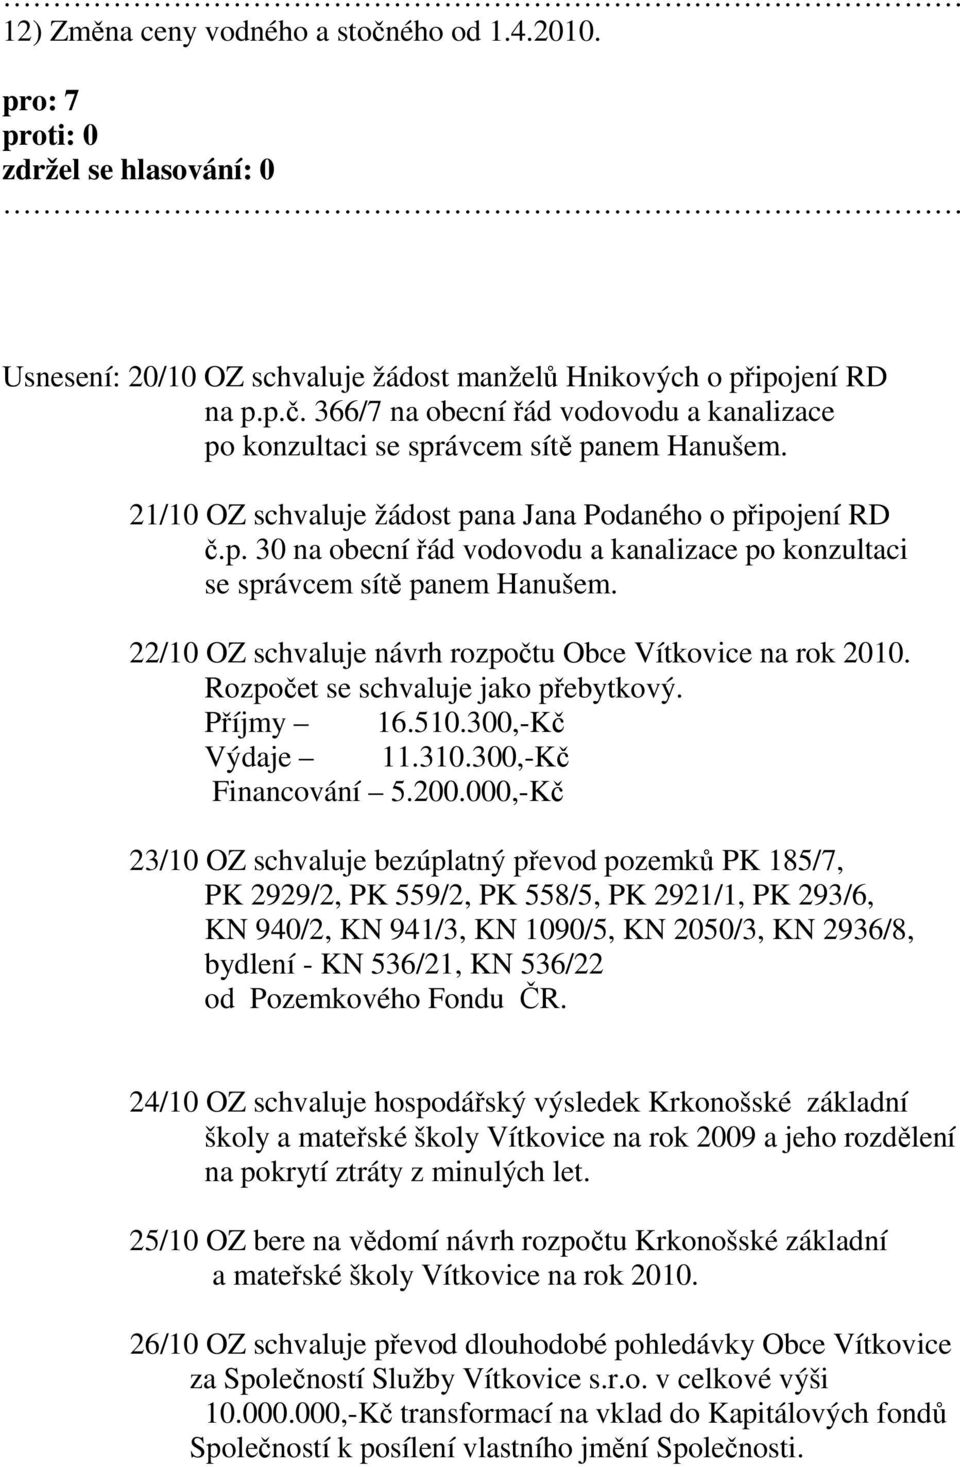 22/10 OZ schvaluje návrh rozpočtu Obce Vítkovice na rok 2010. Rozpočet se schvaluje jako přebytkový. Příjmy 16.510.300,-Kč Výdaje 11.310.300,-Kč Financování 5.200.